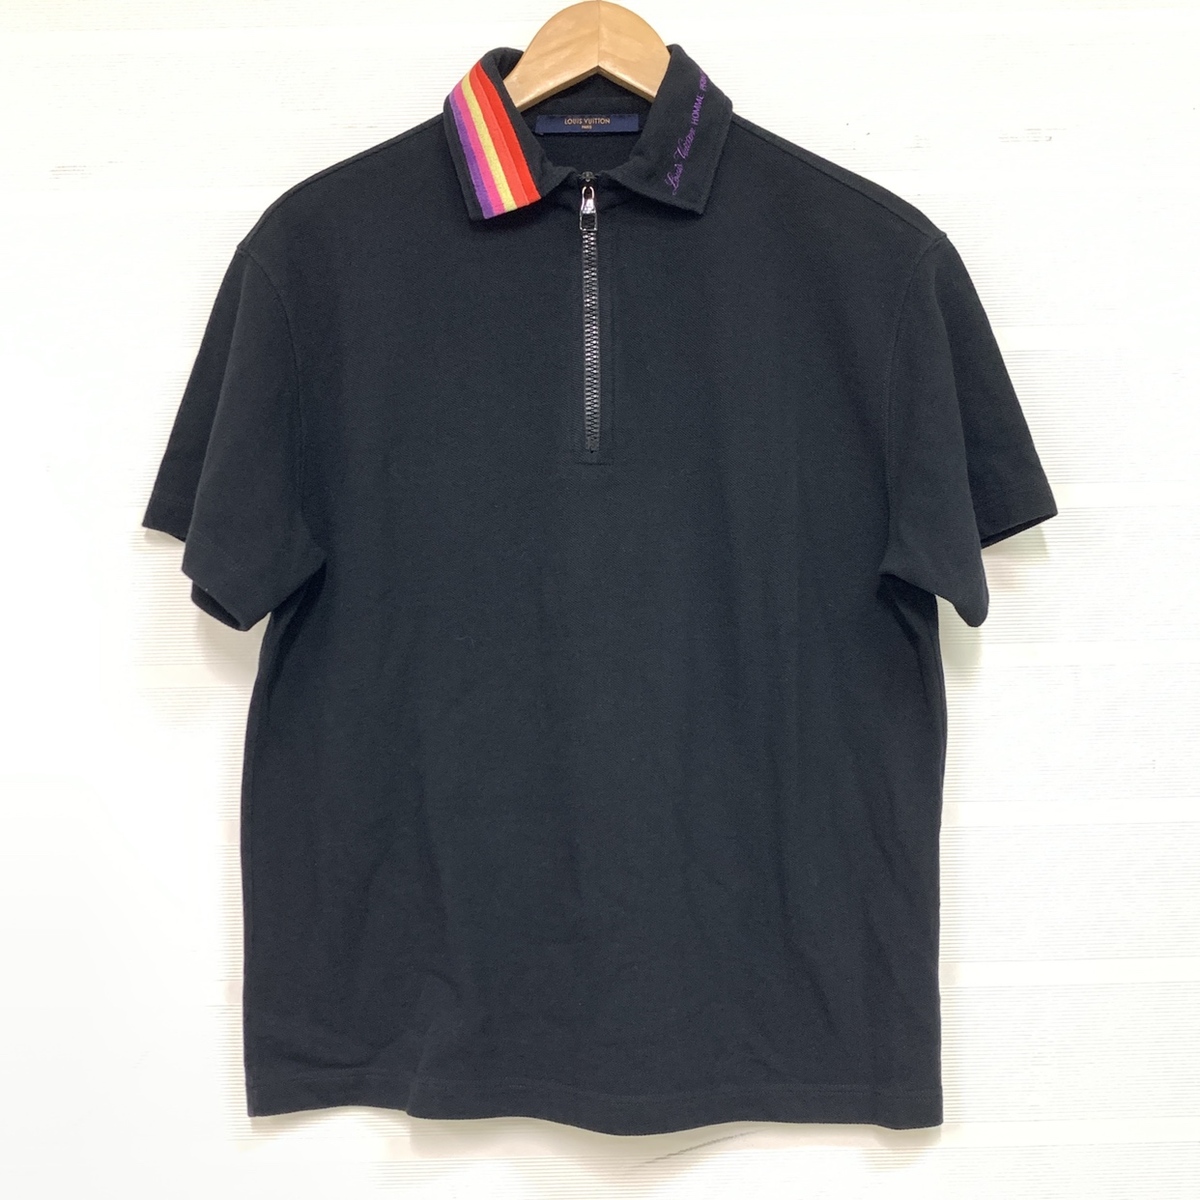 ルイヴィトンの正規 HGY68Ｗ レインボー ロゴ刺繍カラー ハーフジップタイプ ポロシャツの買取実績です。